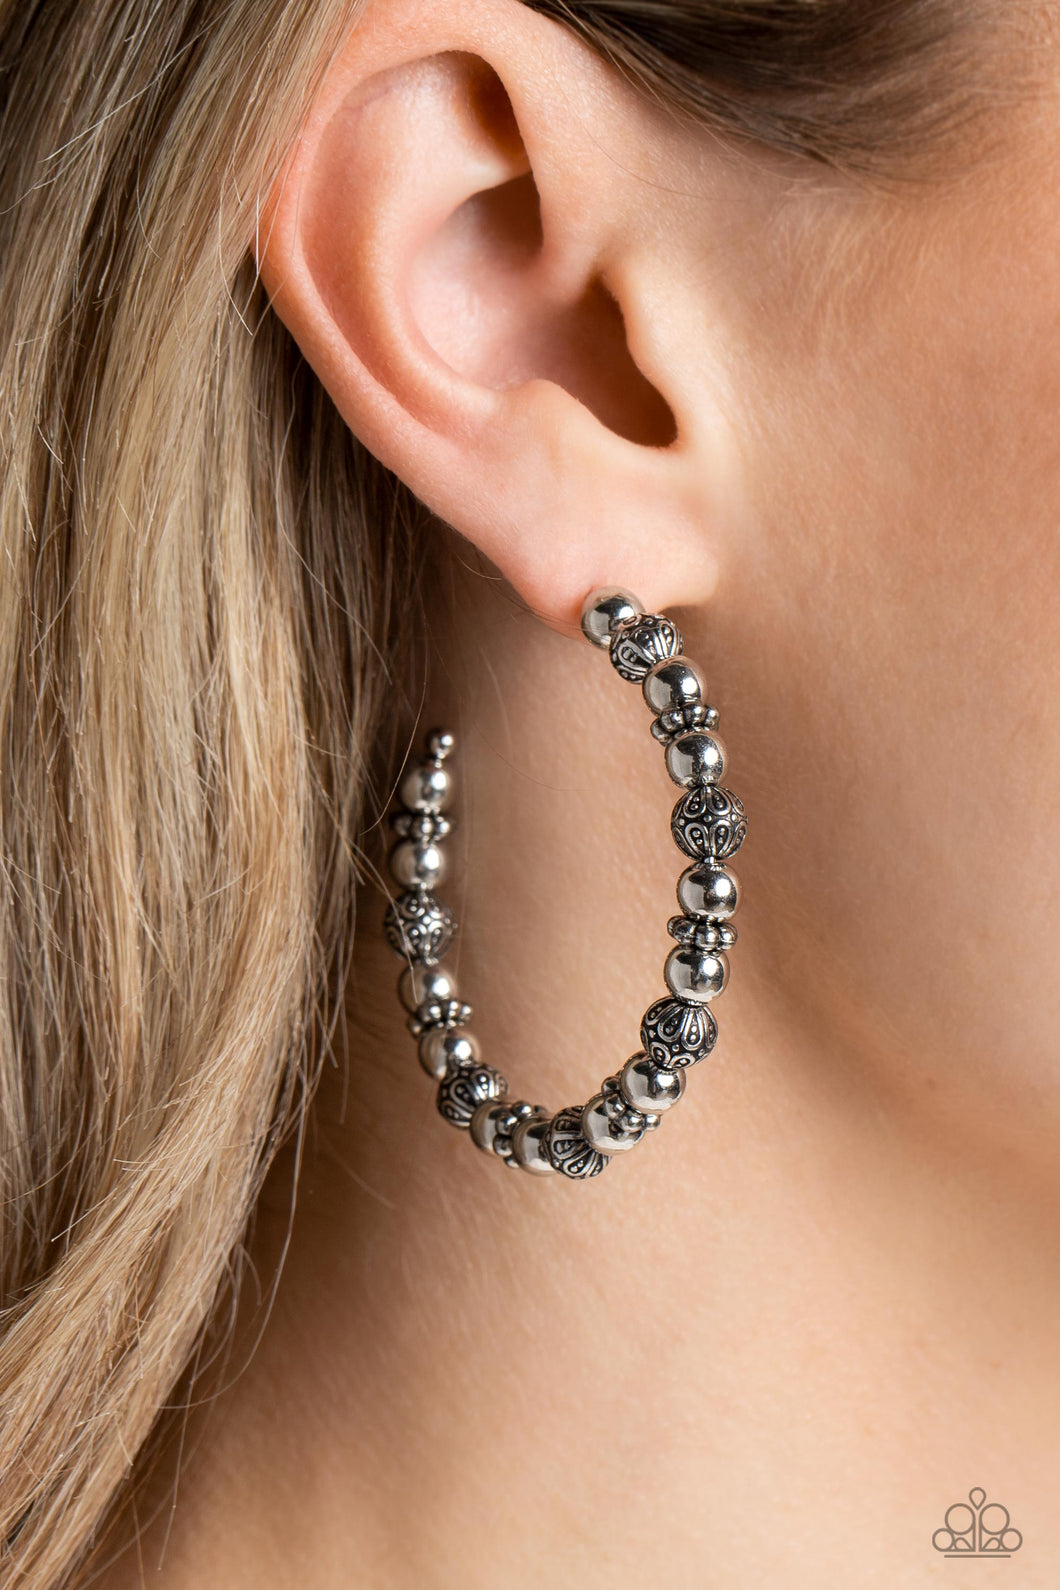 Rebuilt Ruins Silver Earrings - Jewelry by Bretta